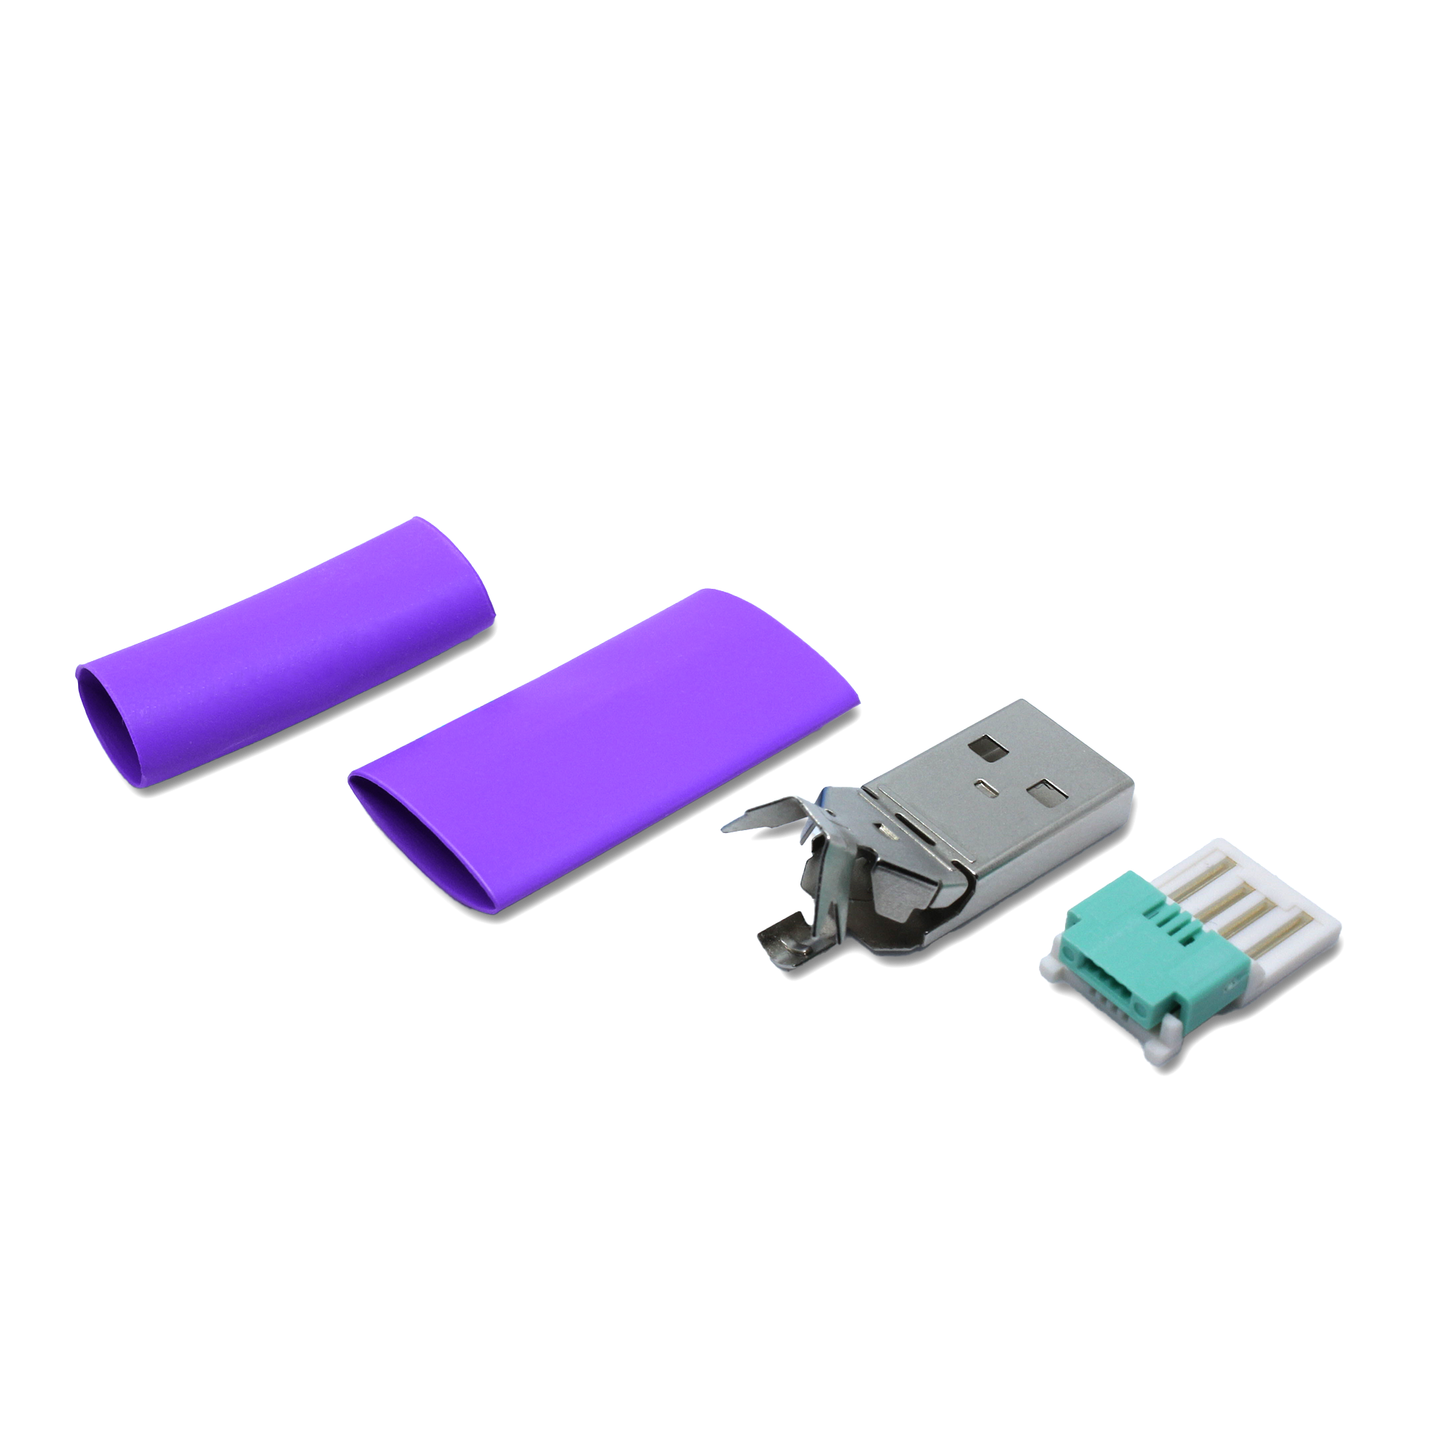 Einzelteile USB A Stecker in lila mit zusätzlichem dünnen Schrumpfschlauch für die Reparatur (lötfrei/ crimpen) dünner USB 2.0 Kabel